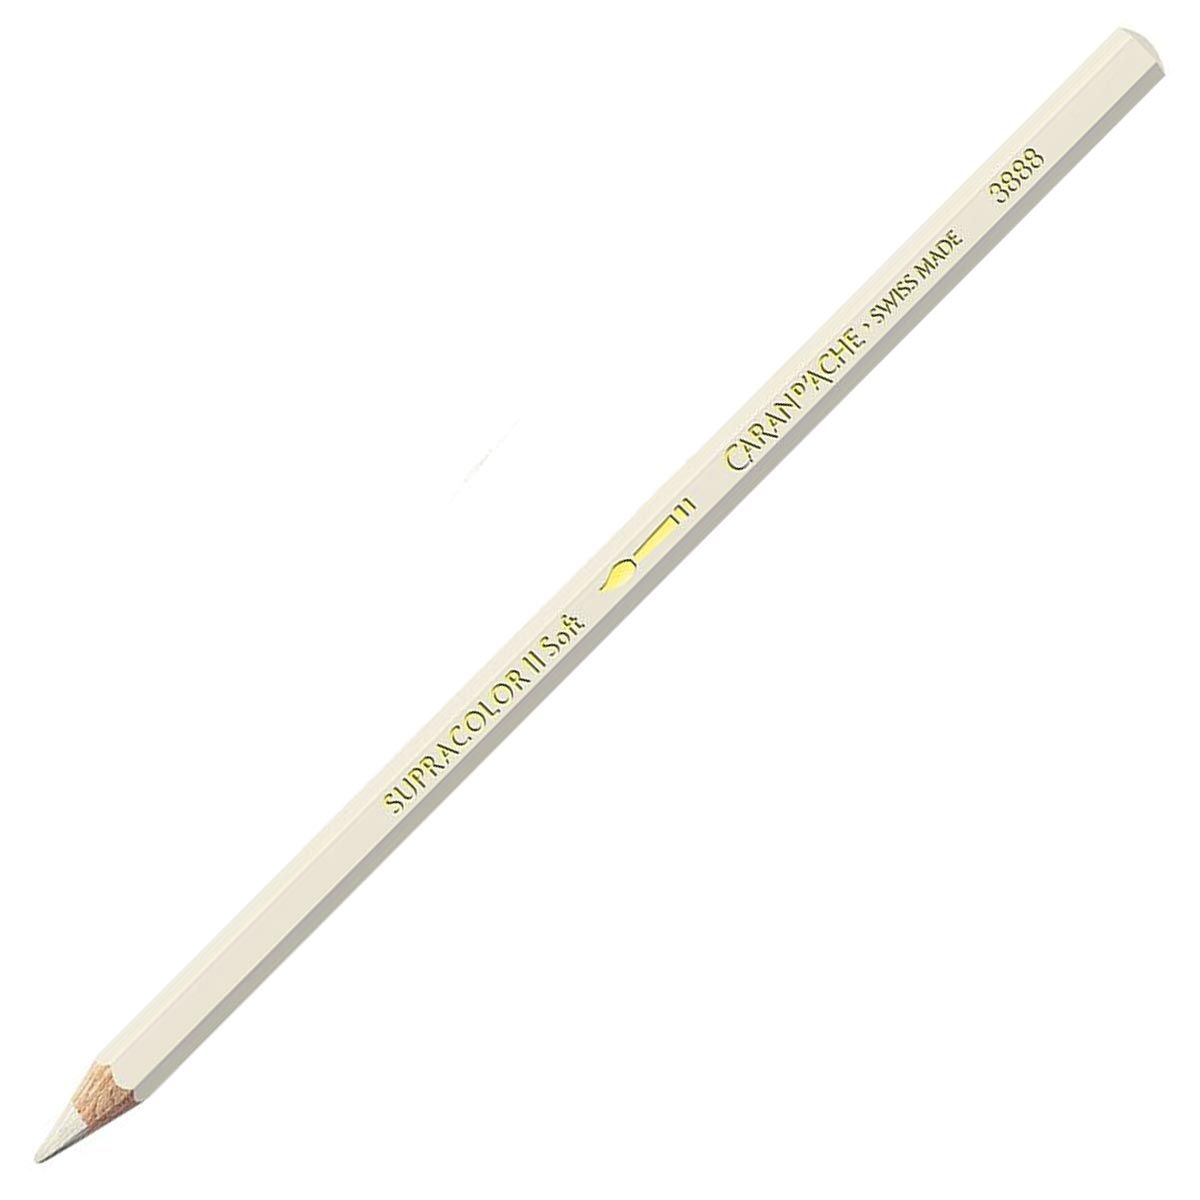 Caran d'Ache Supracolor ll Soft Aquarelle Pencil - Light Beige 402